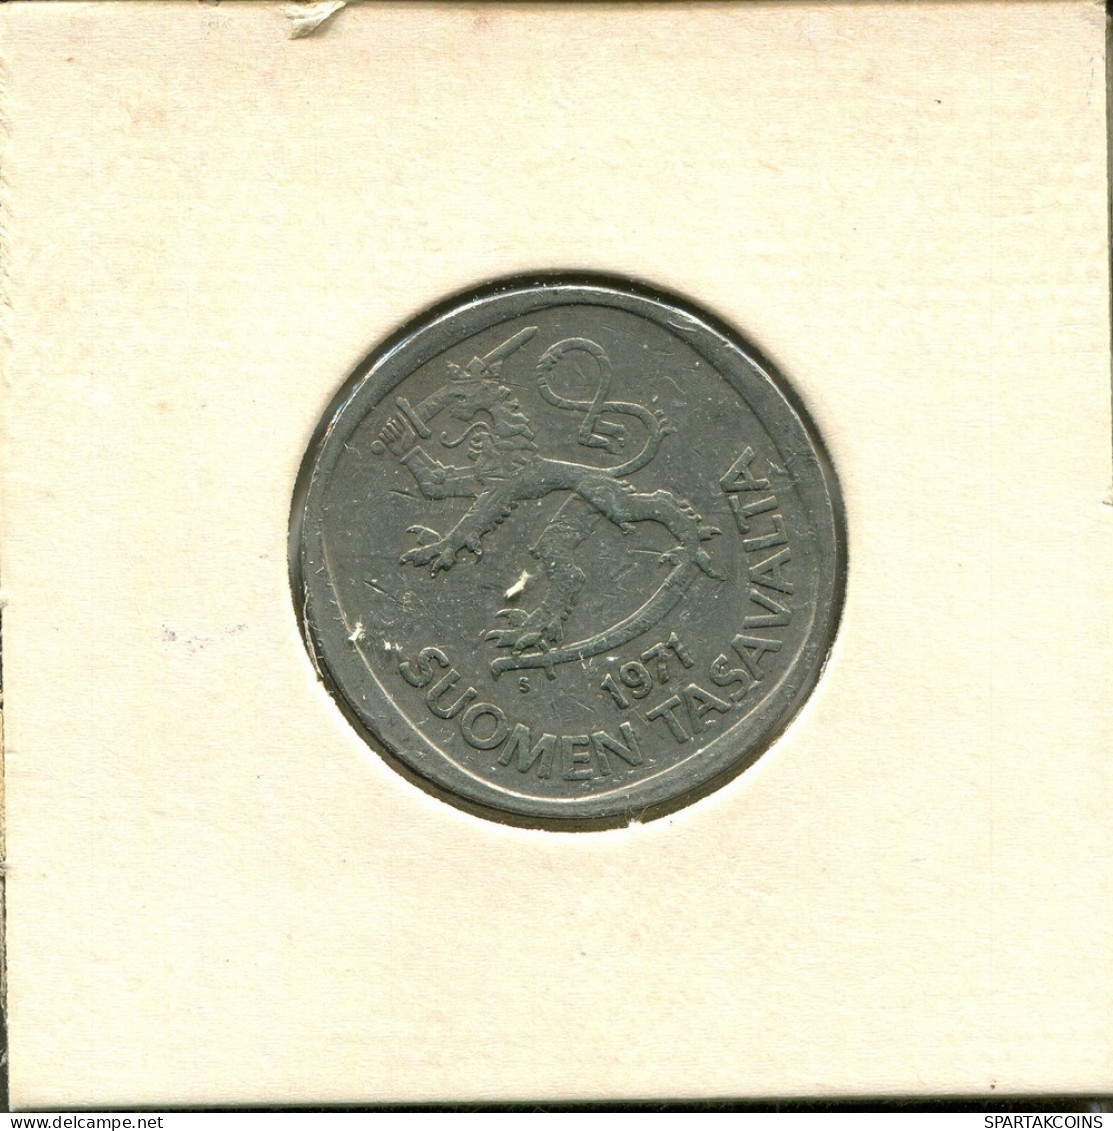 1 MARKKA 1971 FINLAND Coin #AS745.U.A - Finlandia